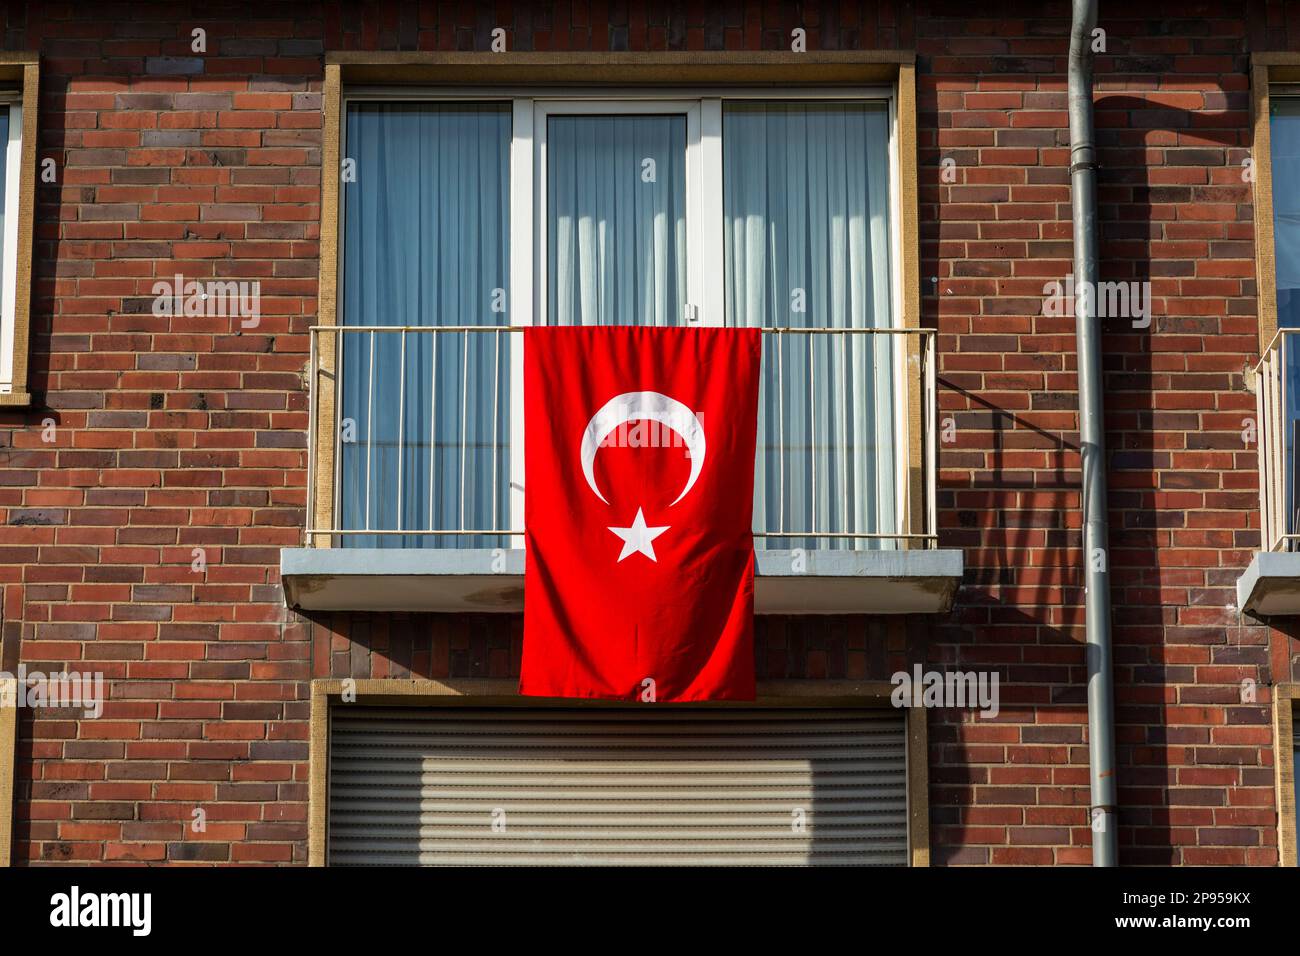 Bandiera nazionale della Turchia sulla facciata di una casa a Oberhausen nella regione della Ruhr come simbolo di solidarietà e solidarietà con le vittime del terremoto in Turchia e Siria dal 06.02.2023 Foto Stock